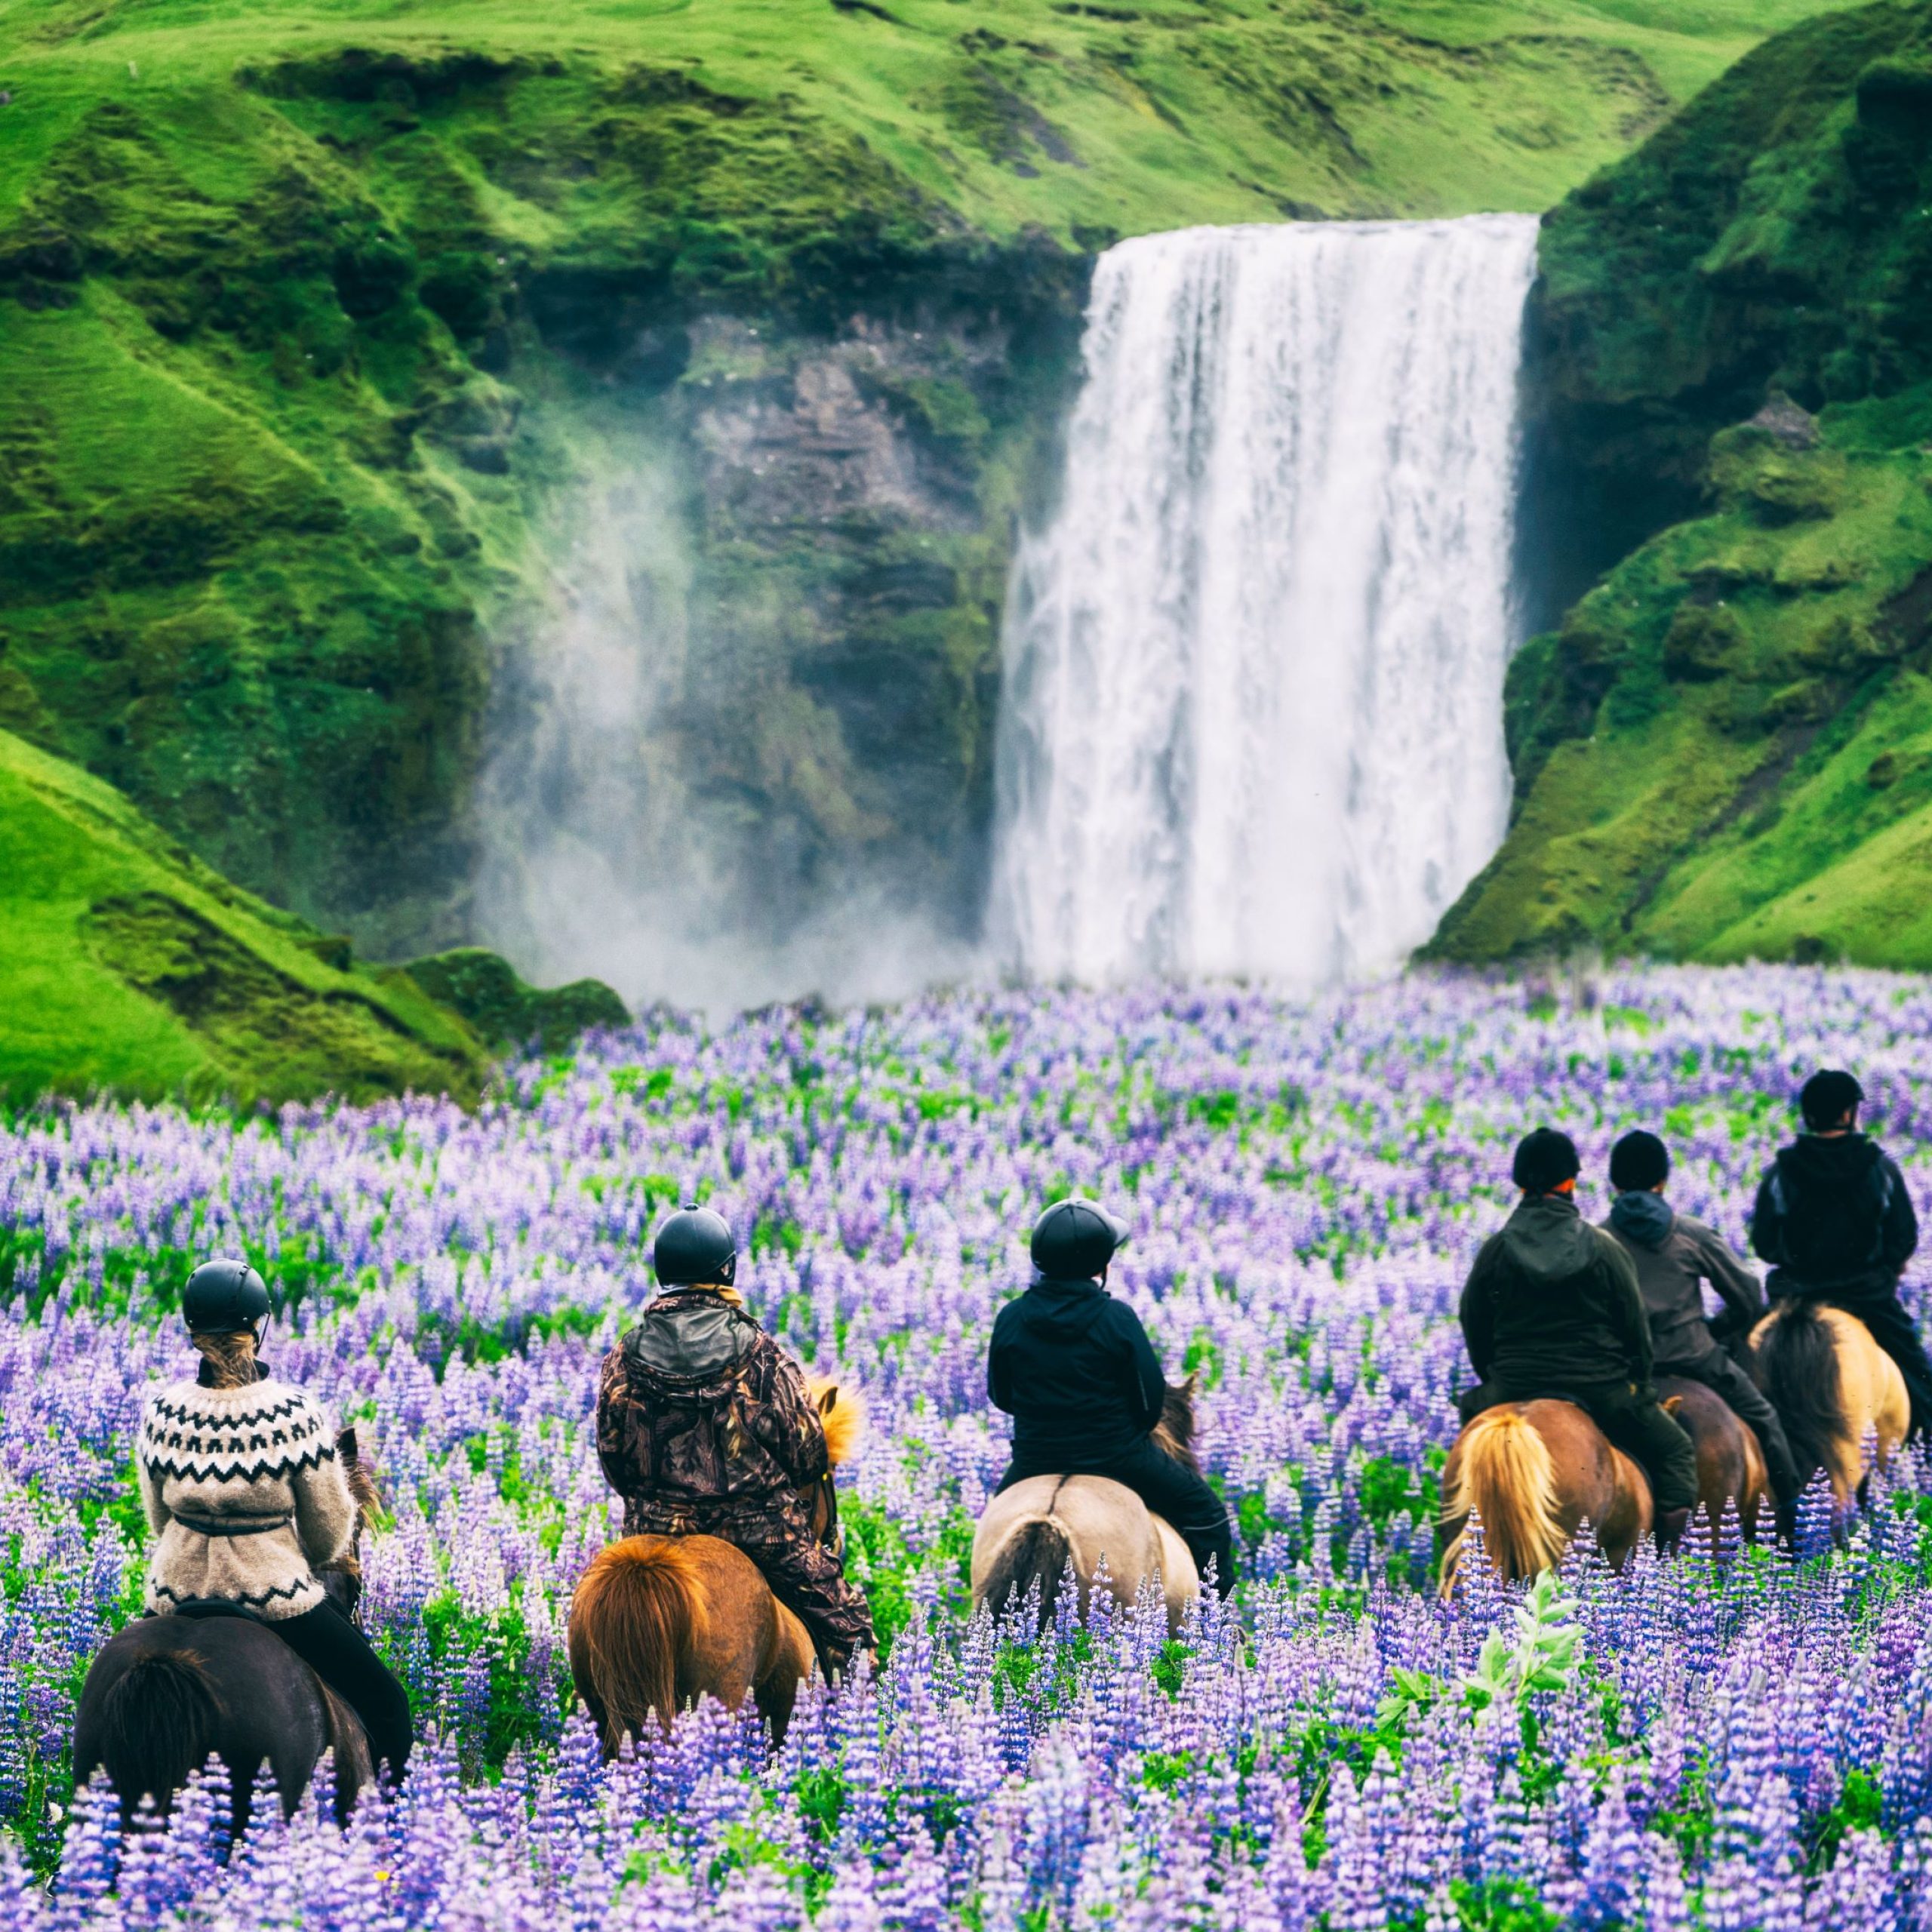 paseggiata a cavallo in un paesaggio unico scaled